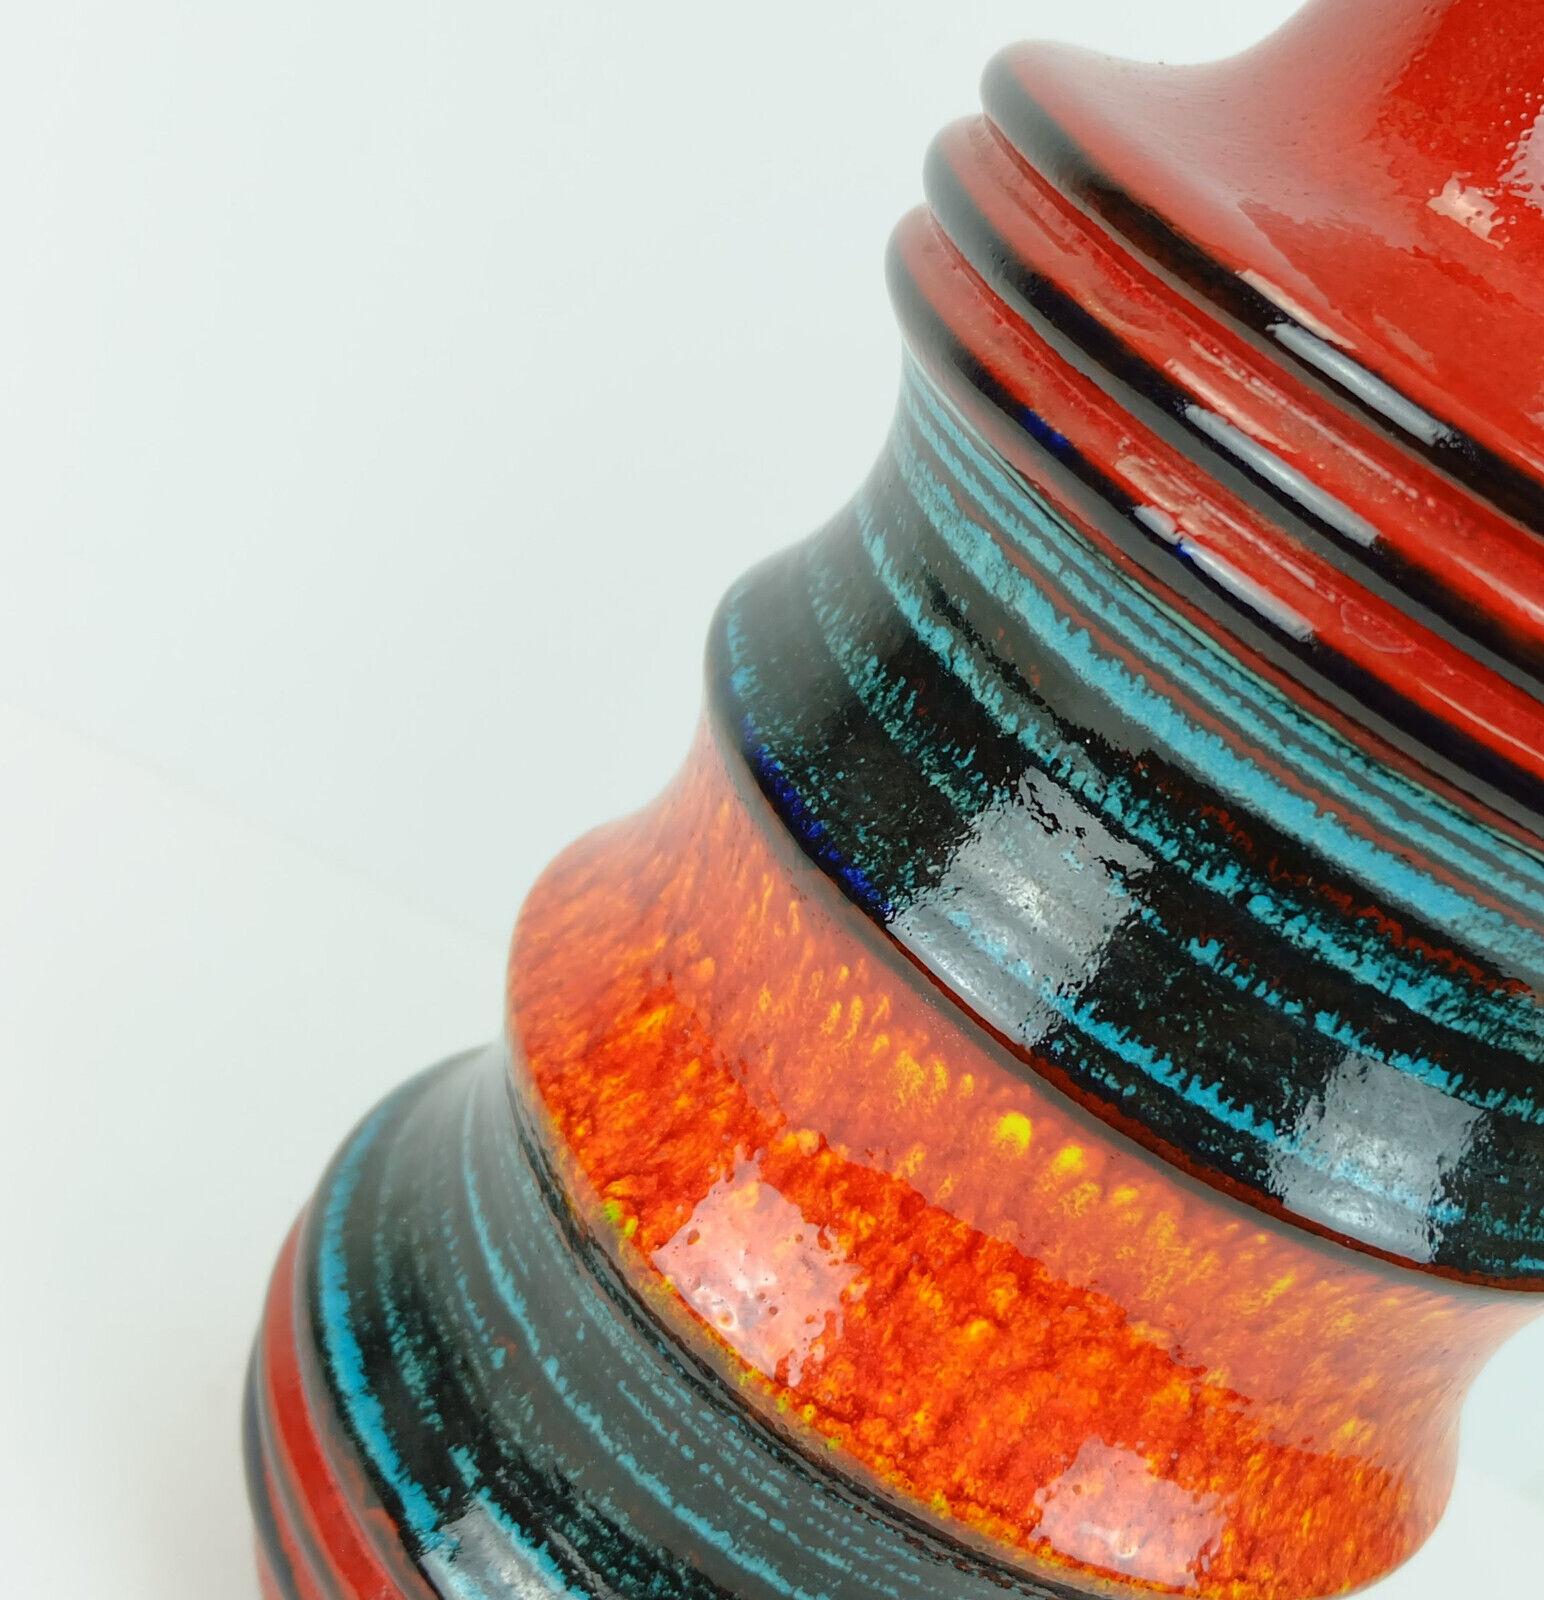 Grande cruche vase fabriquée par Scheurich Keramik dans les années 1960-70. Modèle no. 427-47 avec une glaçure très brillante dans une superbe combinaison de tons chauds et froids combinés avec du noir.

Dimensions en cm :
Hauteur 47 cm, diamètre 20